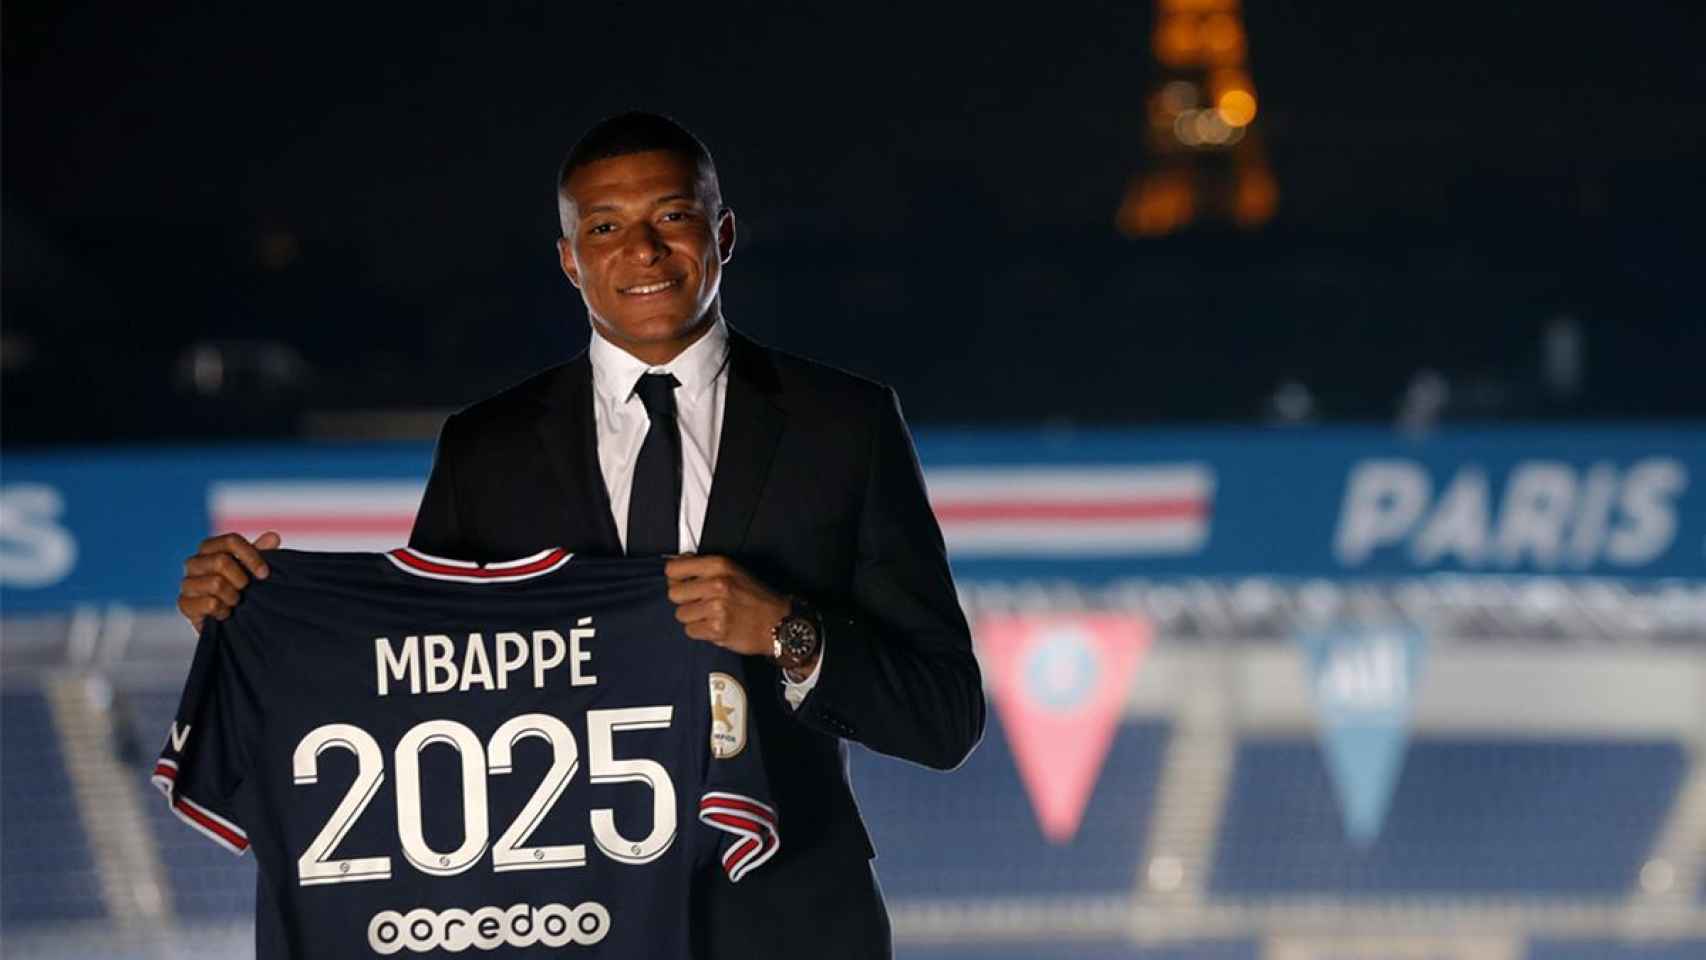 Última hora de Mbappé, en directo | Todas las claves de su renovación con el PSG